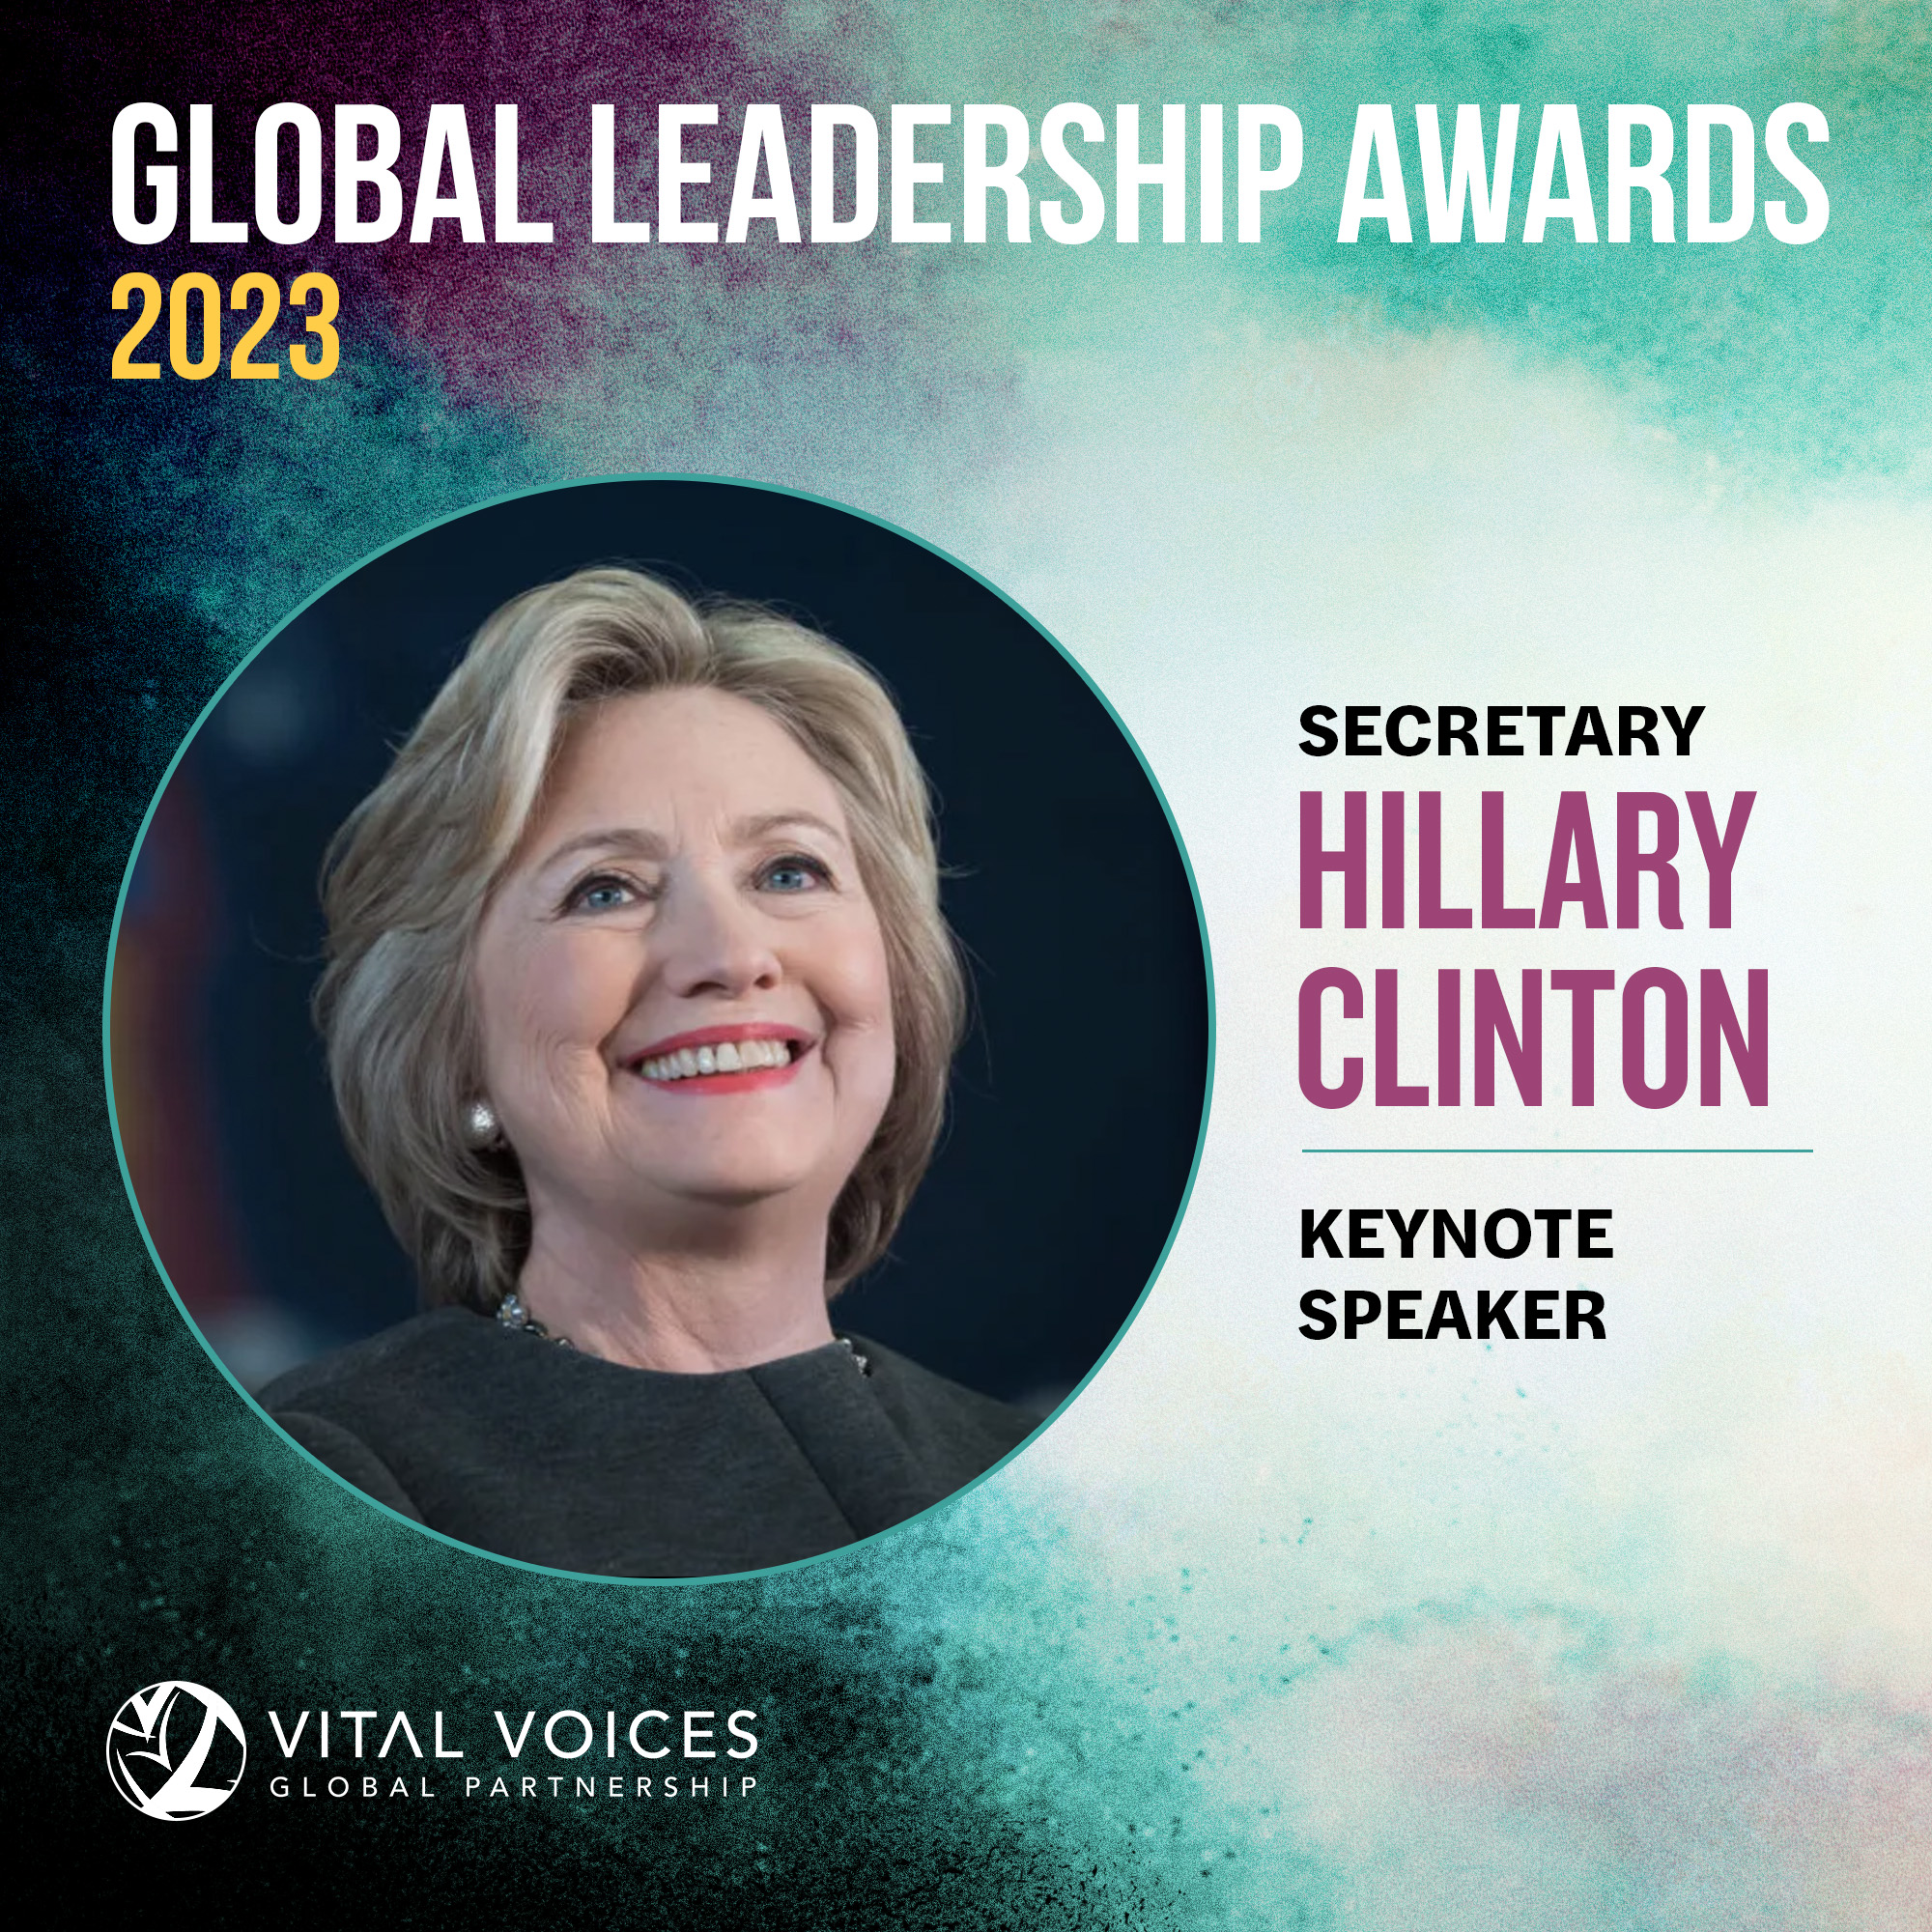 Global Leadership Awards Keynote Speaker